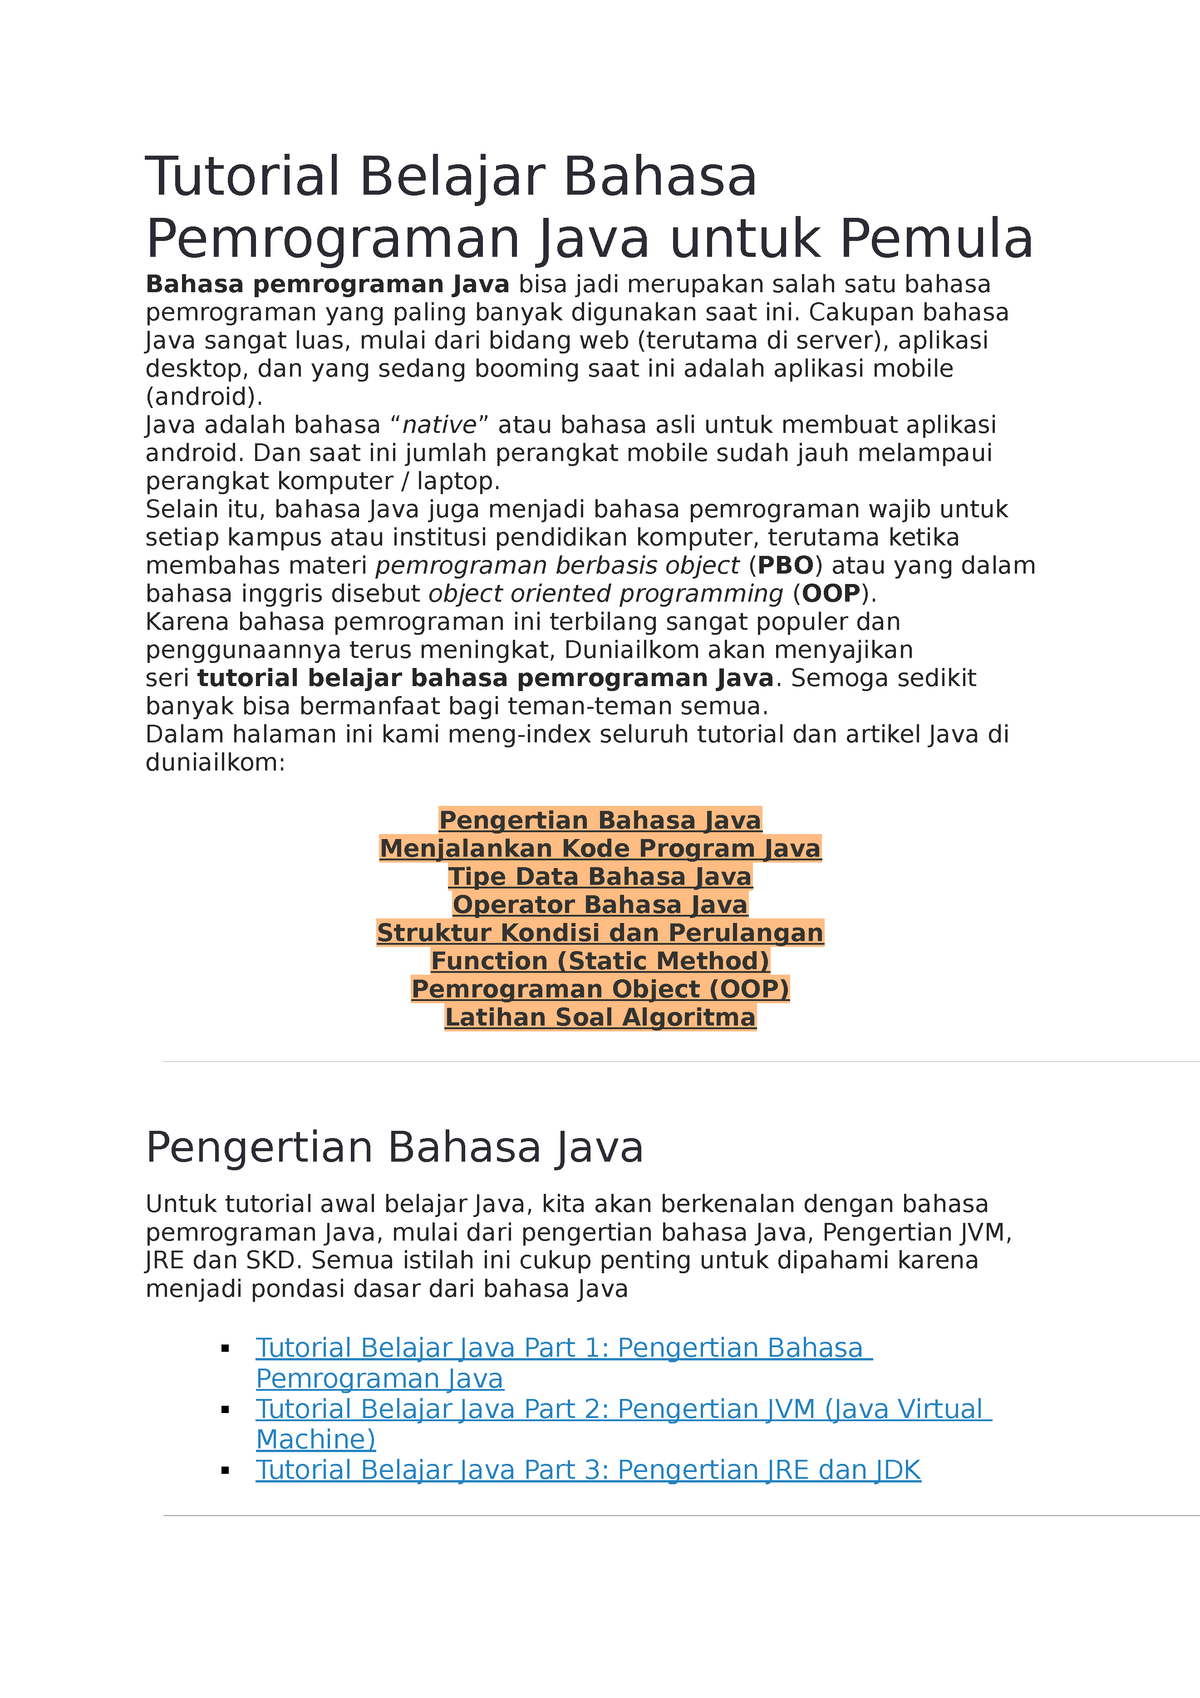 Tutorial Belajar Bahasa Pemrograman Java Untuk Pemula Tutorial Belajar Bahasa Pemrograman Java 4716